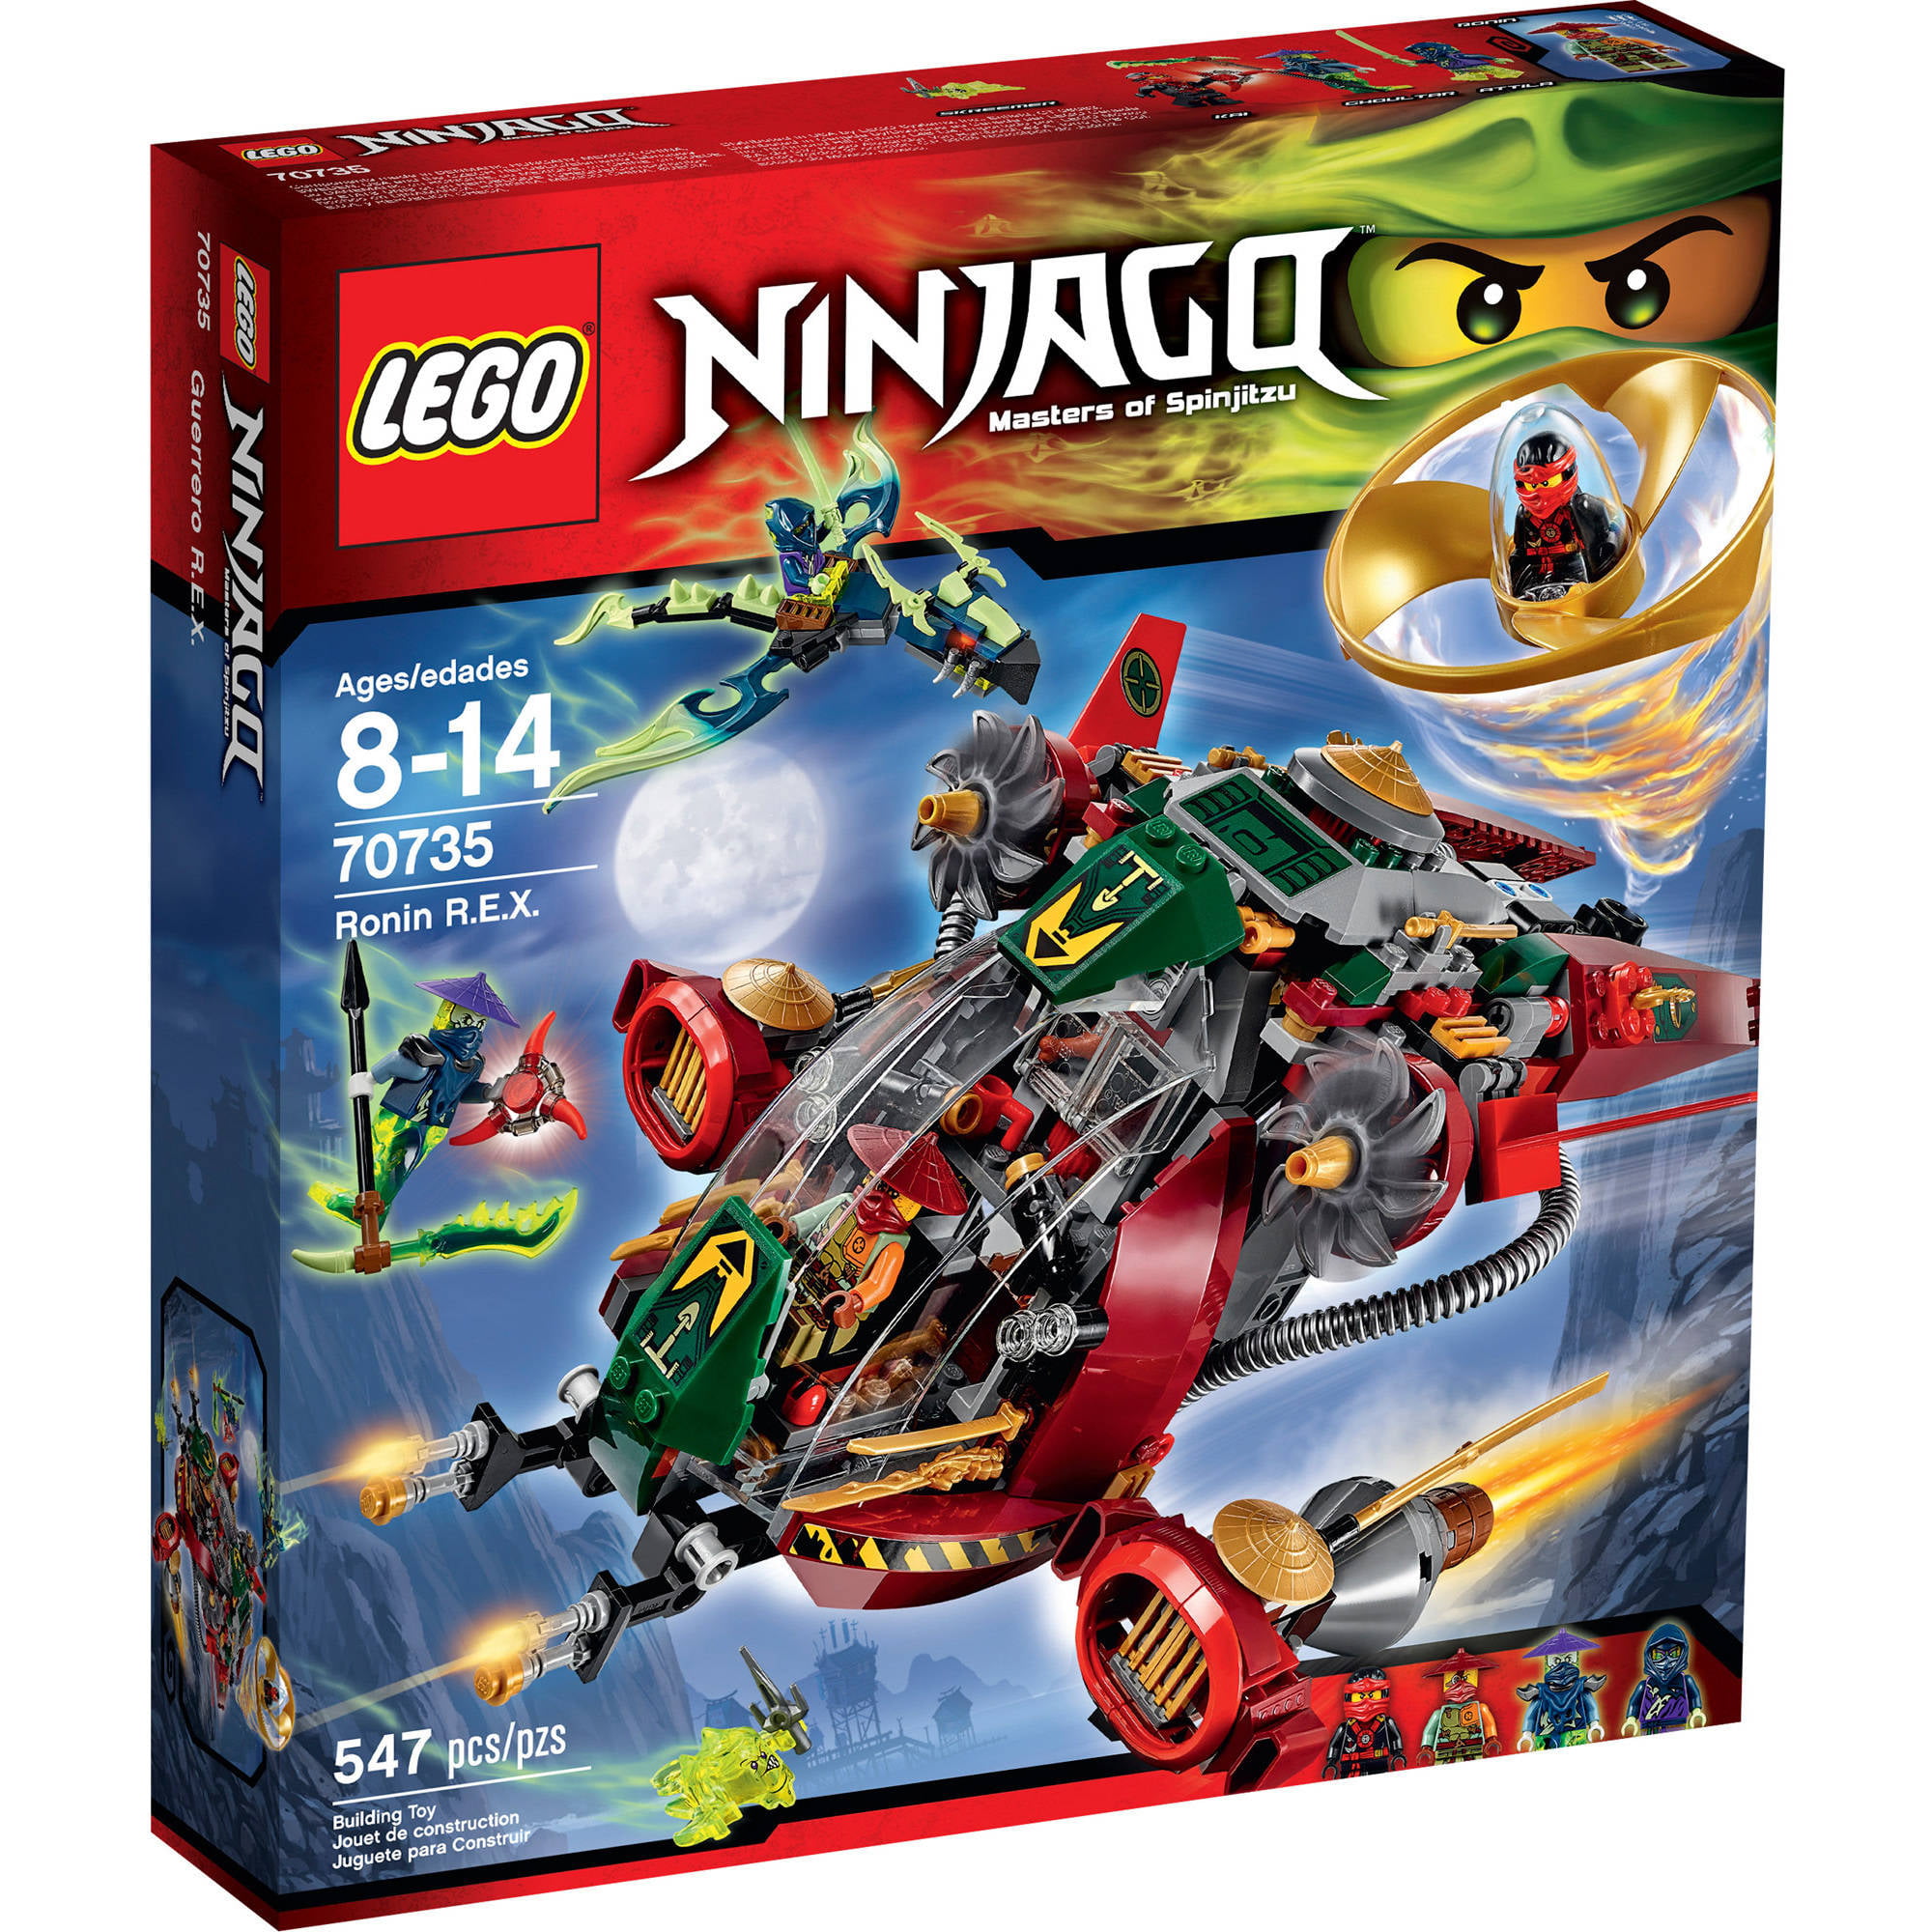 LEGO Ninjago Ronin R.E.X., 70735 - Walmart.com - Walmart.com